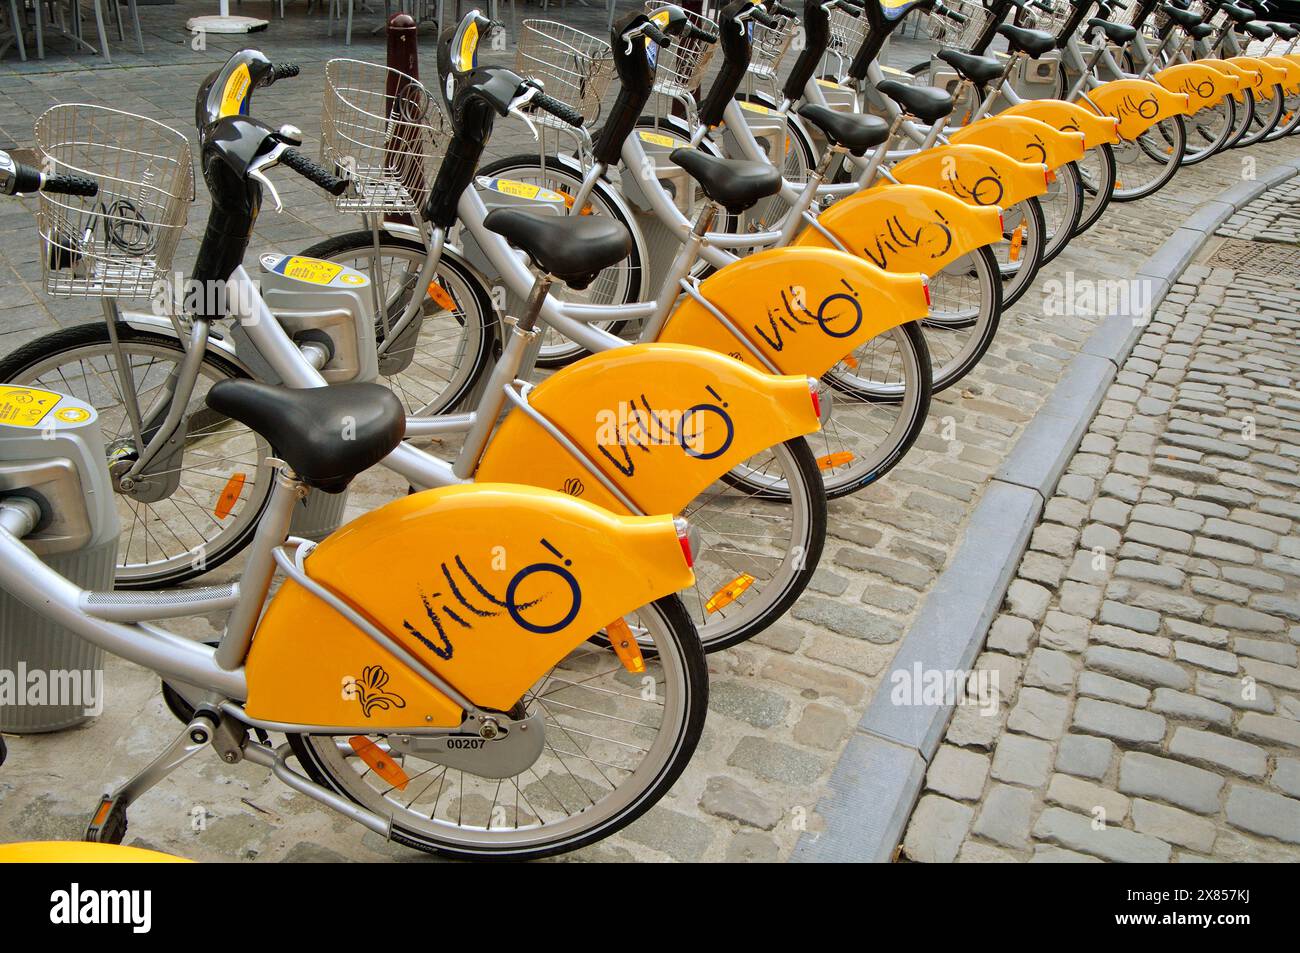 Belgio, Bruxelles, condivisione biciclette, stazione di parcheggio per noleggio biciclette Foto Stock